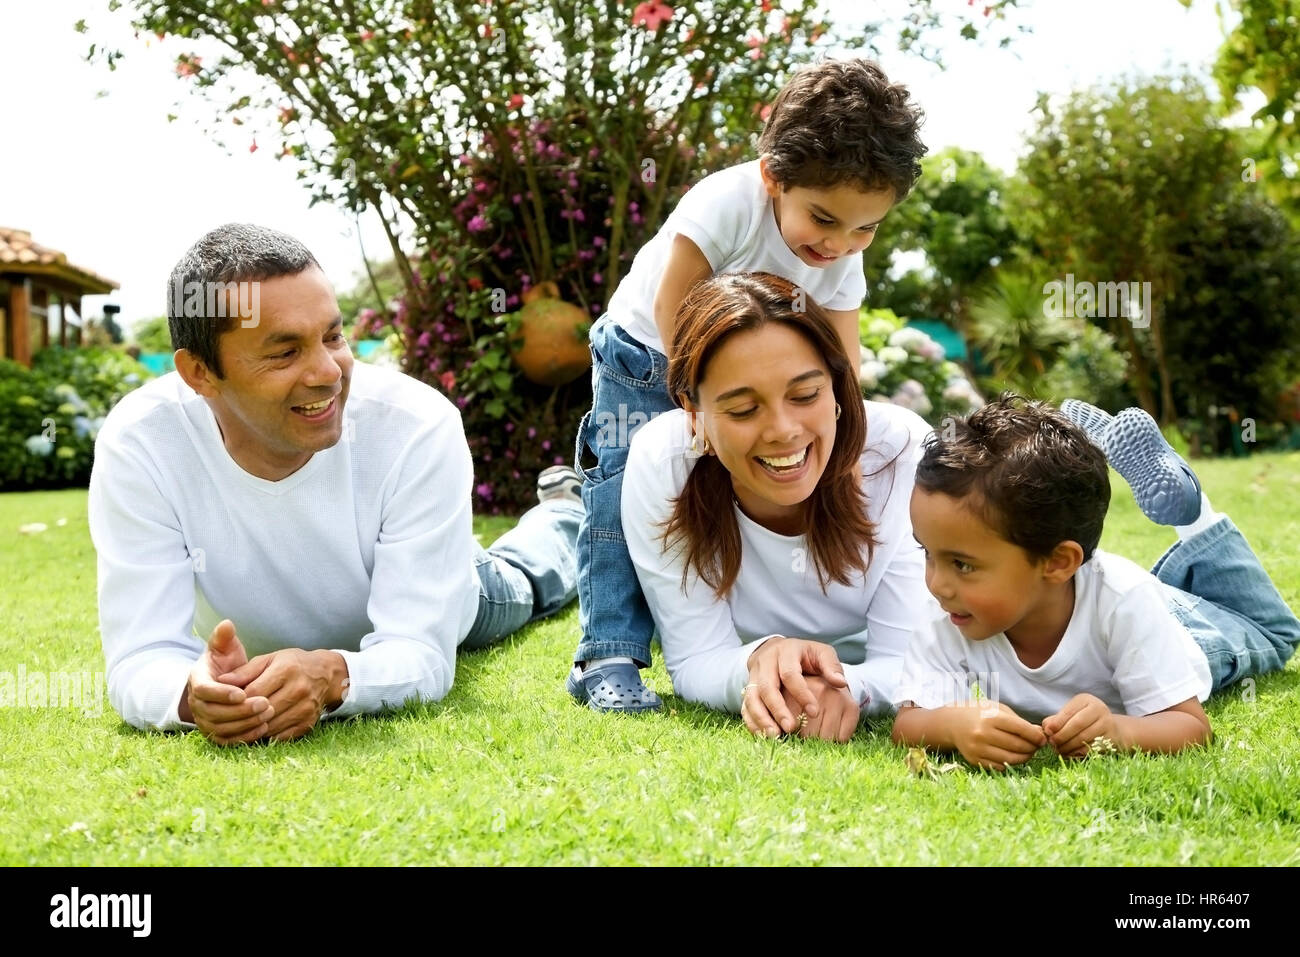 glückliche Familie lächelnd in ein Porträt von einer Mama und Papa mit ihren zwei Kindern Stockfoto